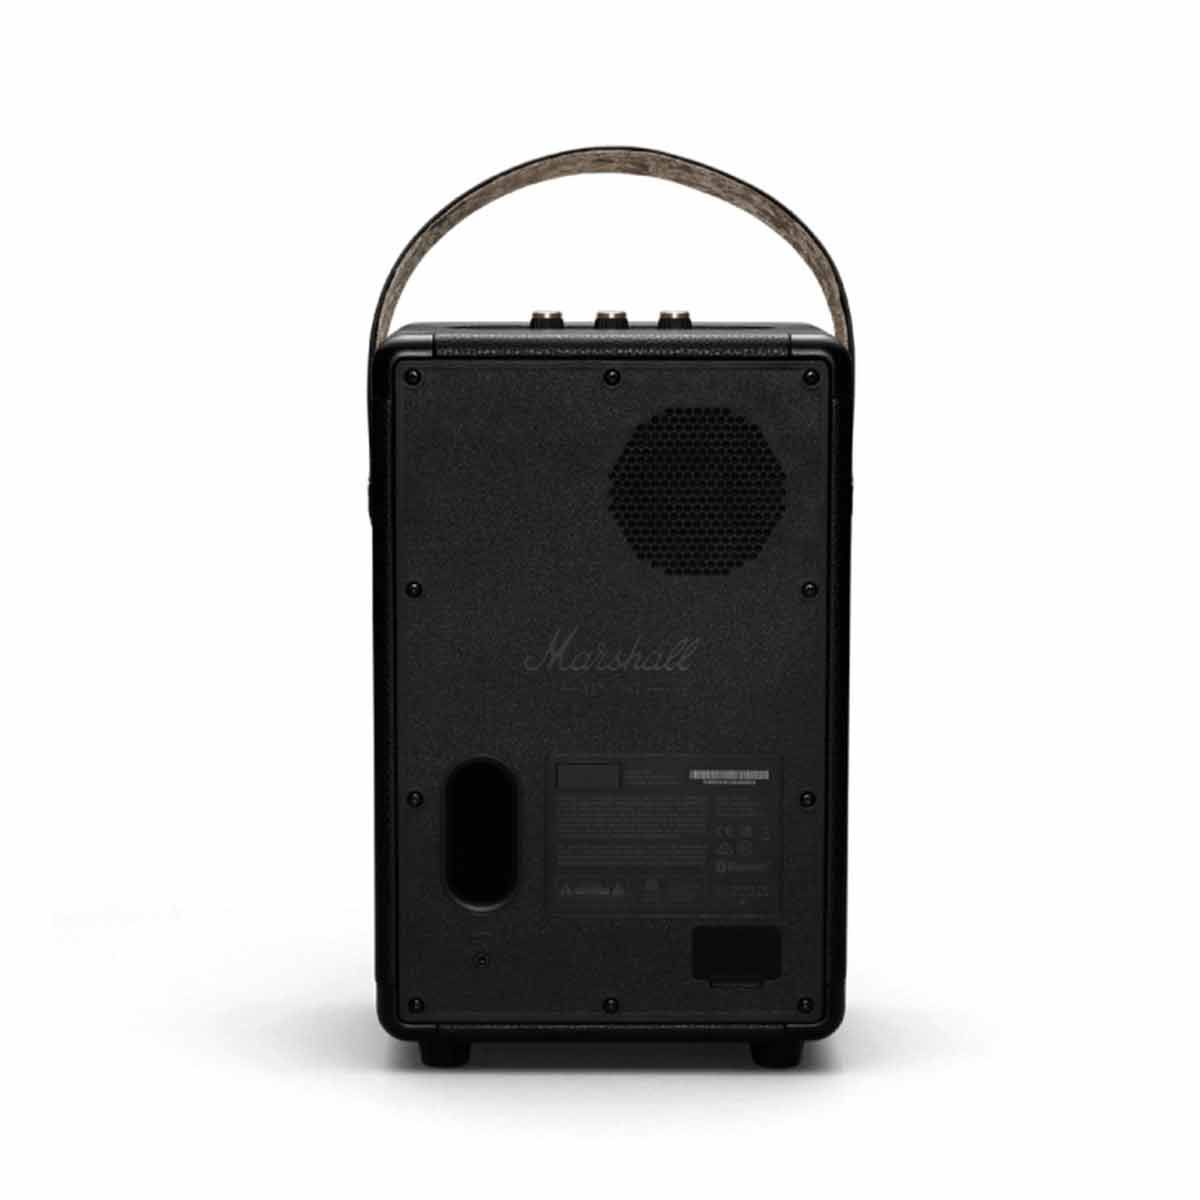 MARSHALL ลำโพงไร้สาย Bluetooth Speaker รุ่น TUFTONBB Bluetooth Speaker